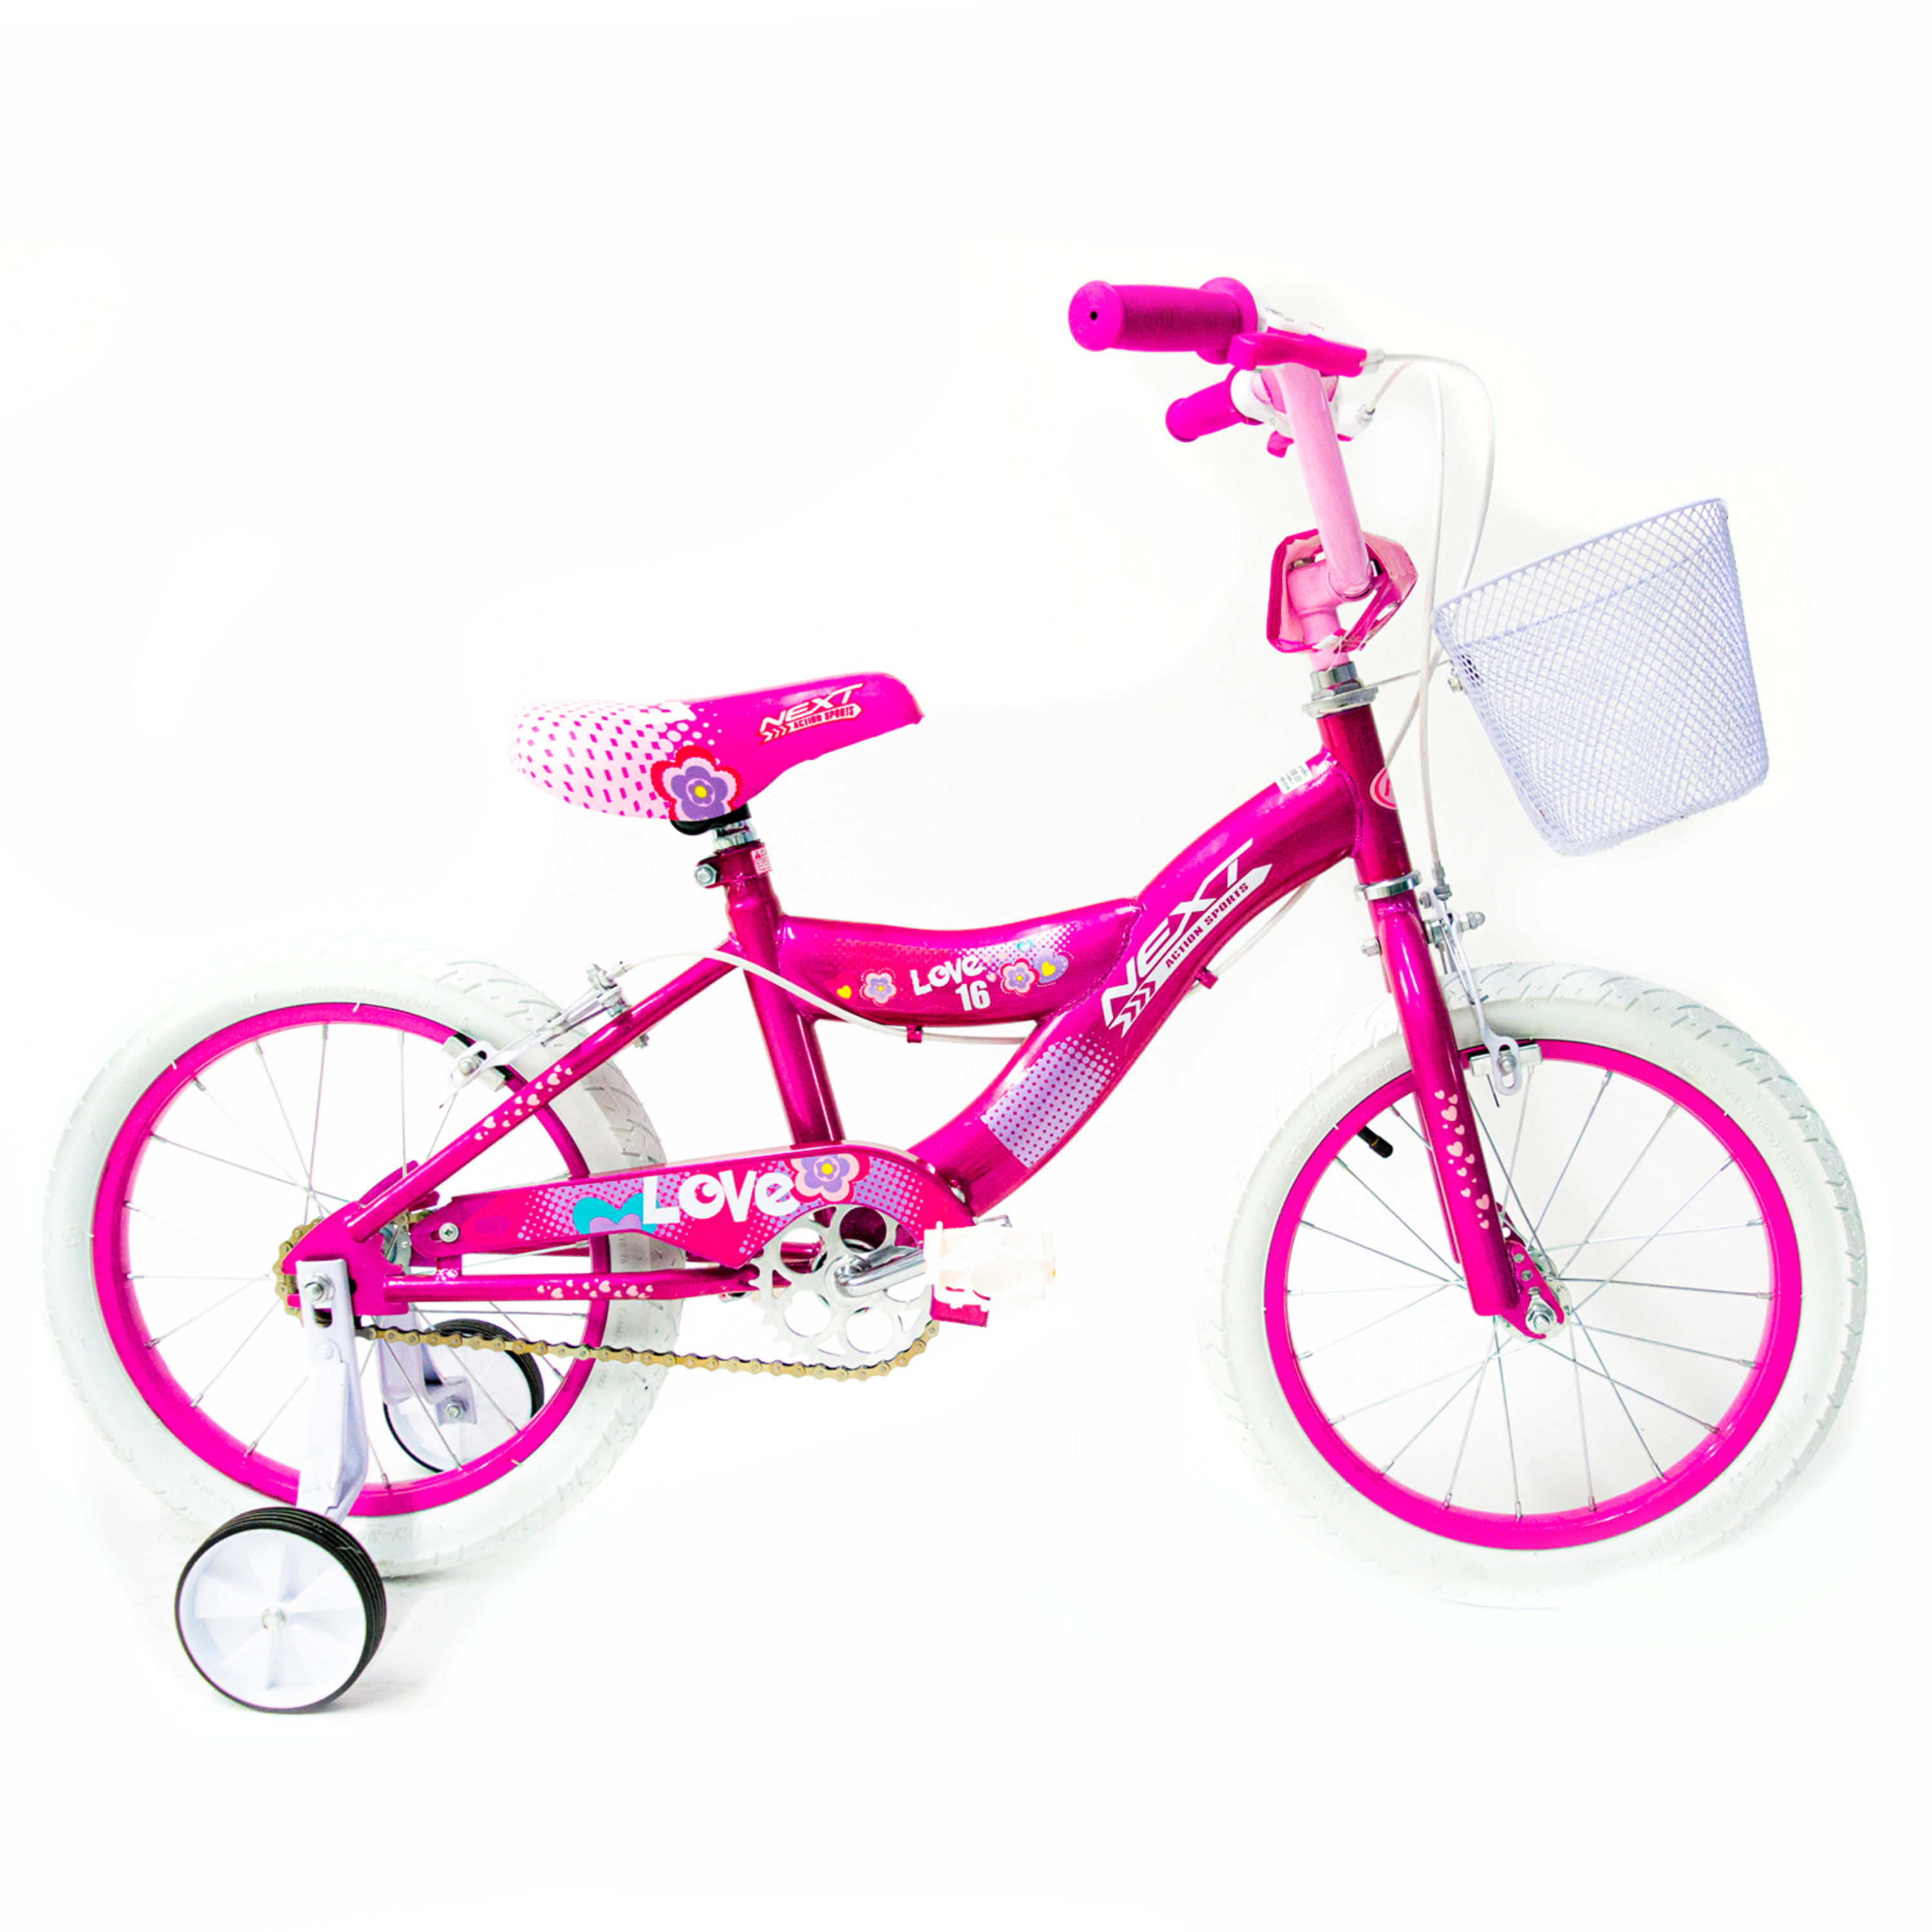 Comprar Bicicleta 16 Bmx Princesa para niñas de 6 a 8 años Modelo